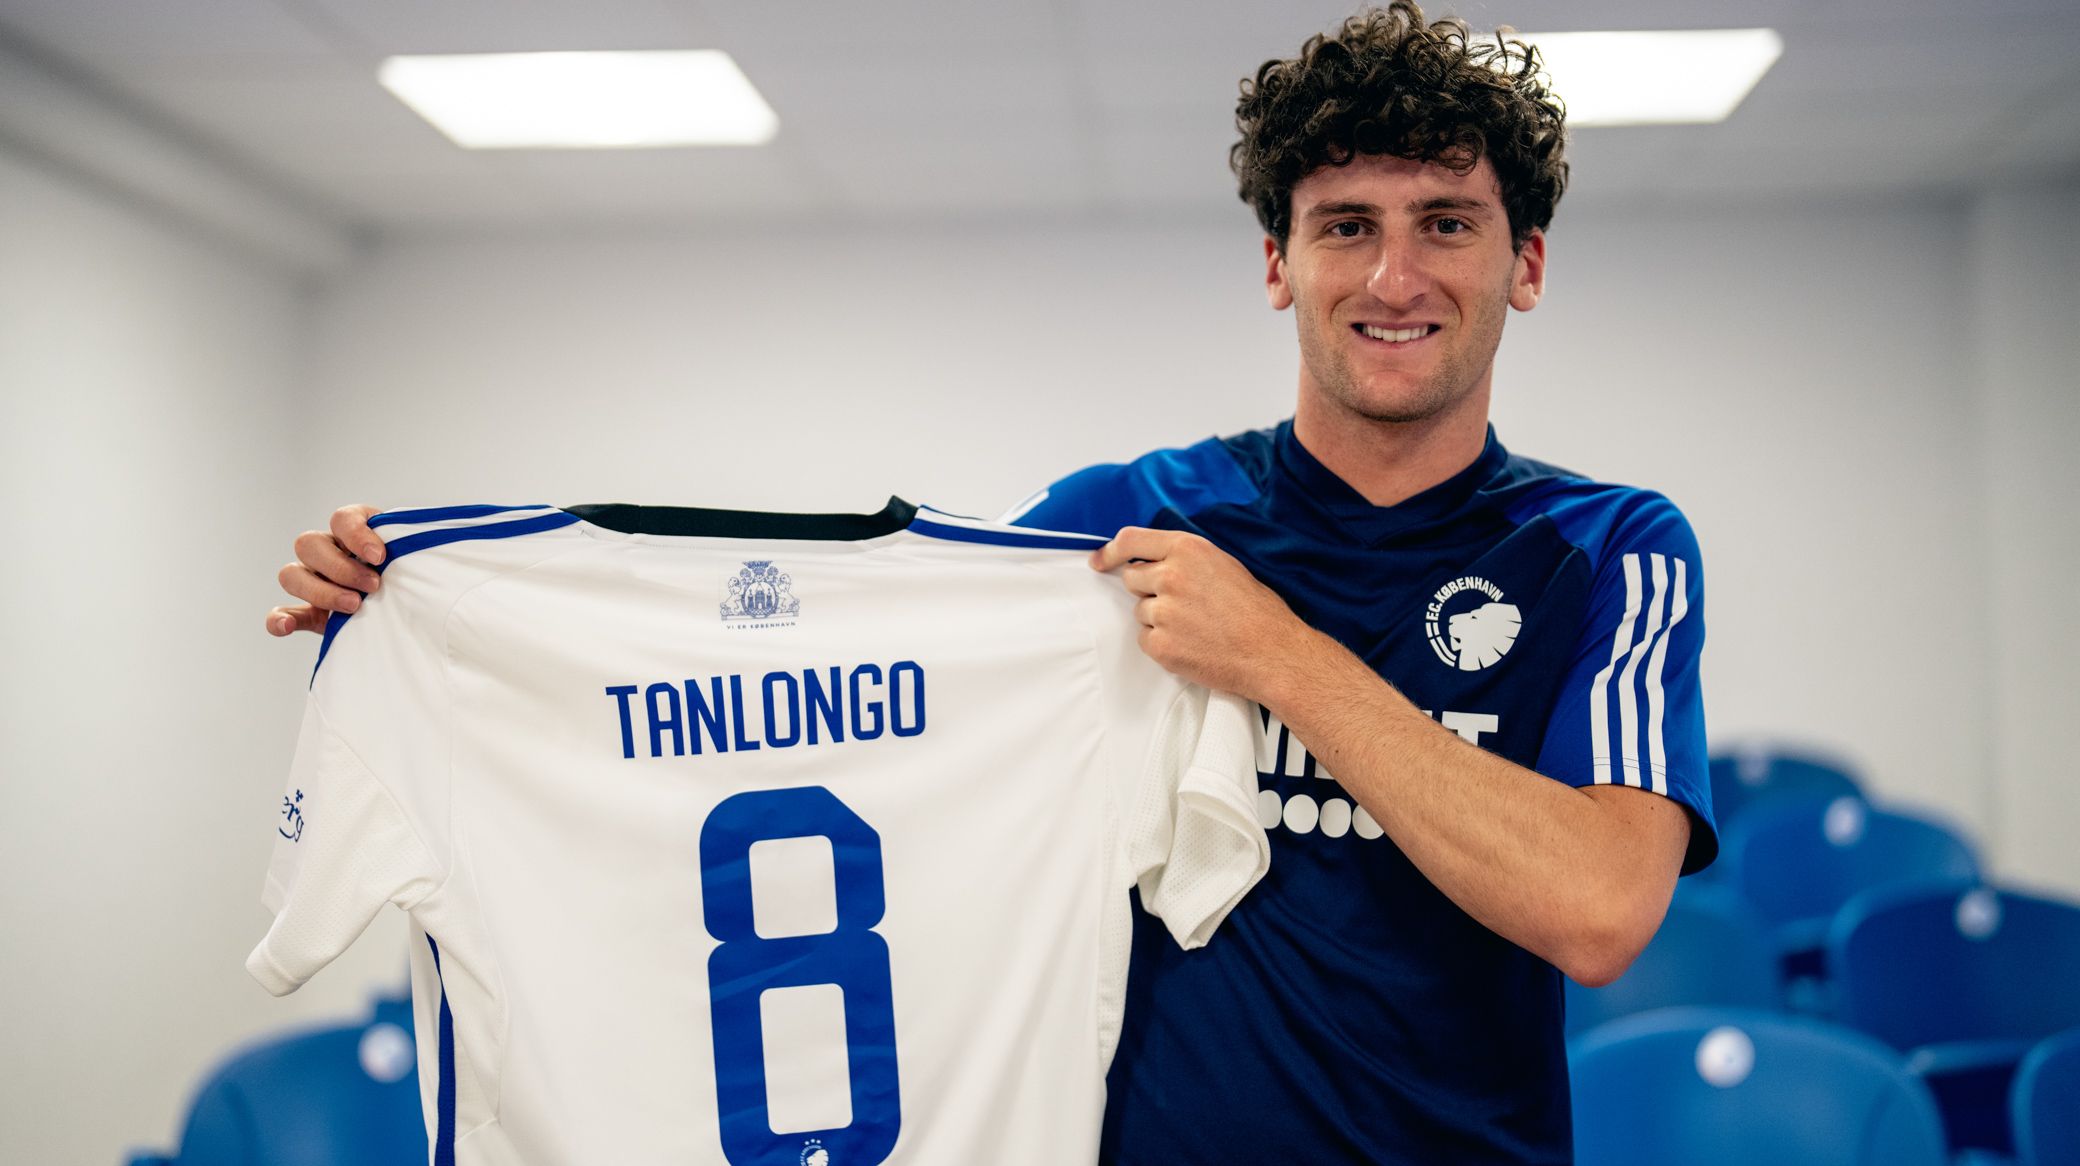 Mateo Tanlongo med trøje nummer 8